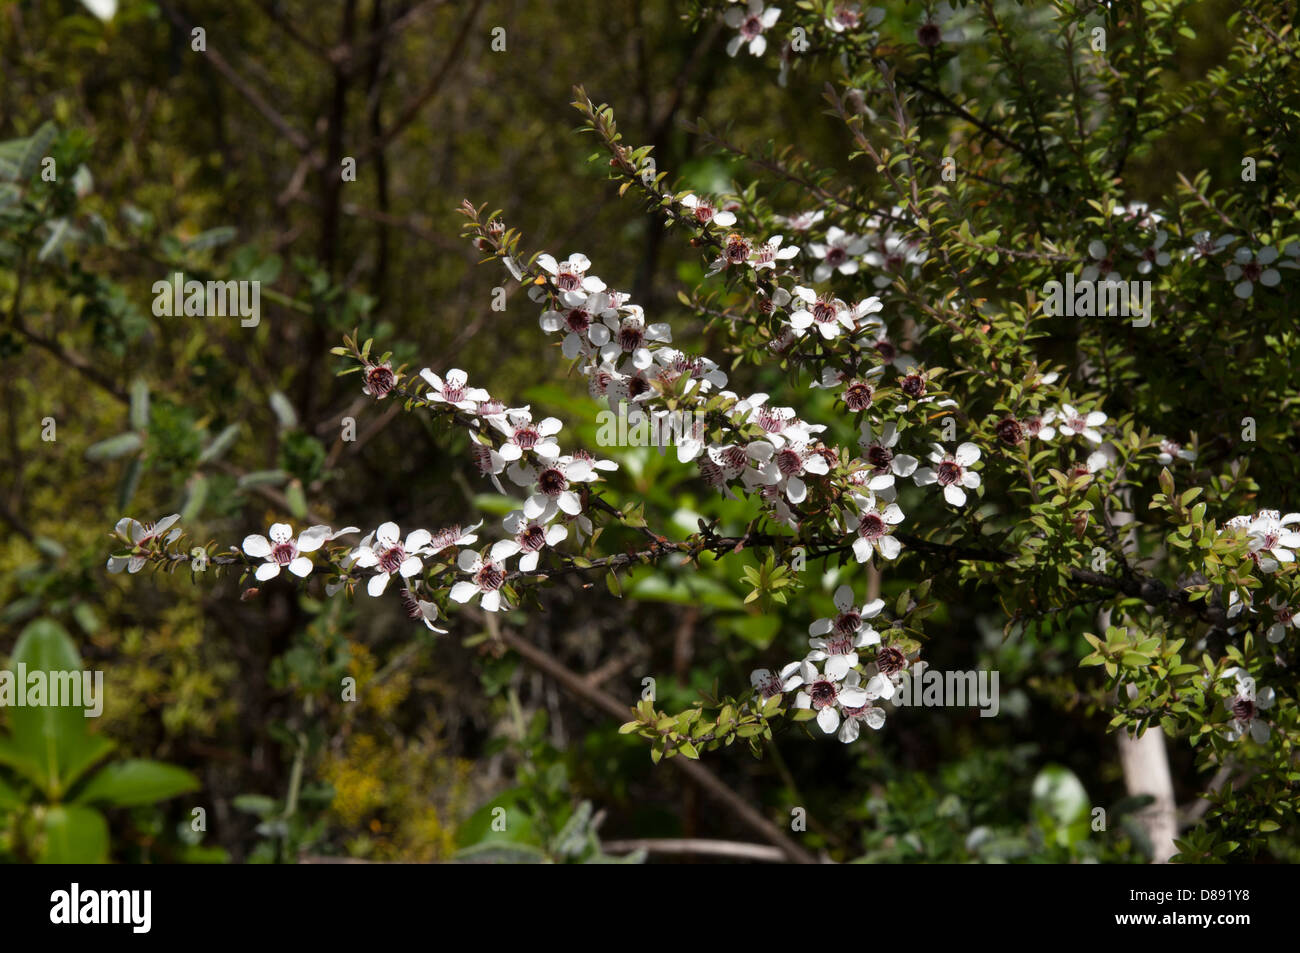 In trockenen Regionen von Neuseeland Manuka Busch wächst Leptospermum Scoparium. Die einheimische Pflanze ist die Quelle für einen berühmten Honig. Stockfoto